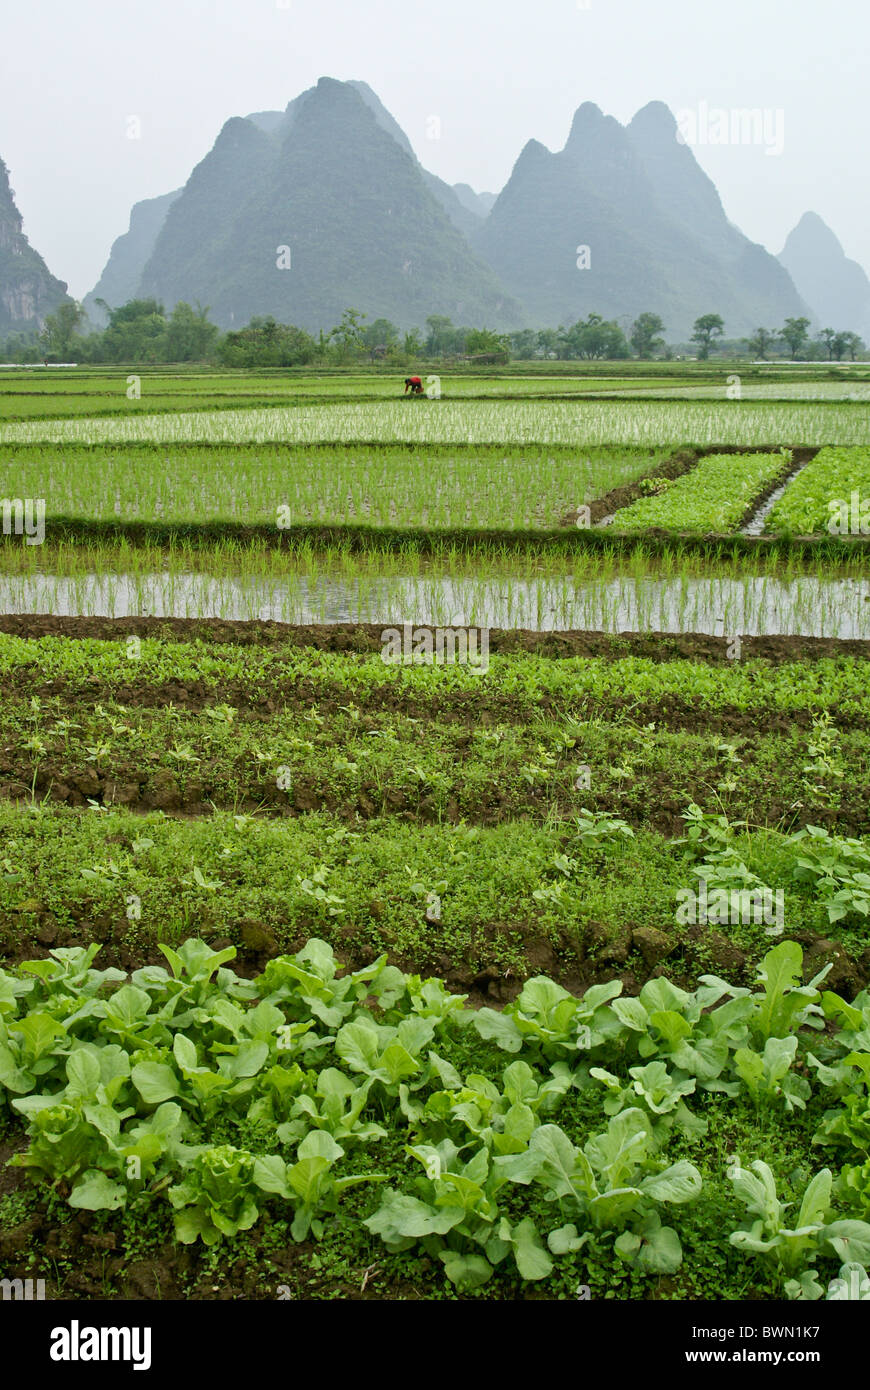 Le risaie e il paesaggio carsico del Guangxi, Cina Foto Stock